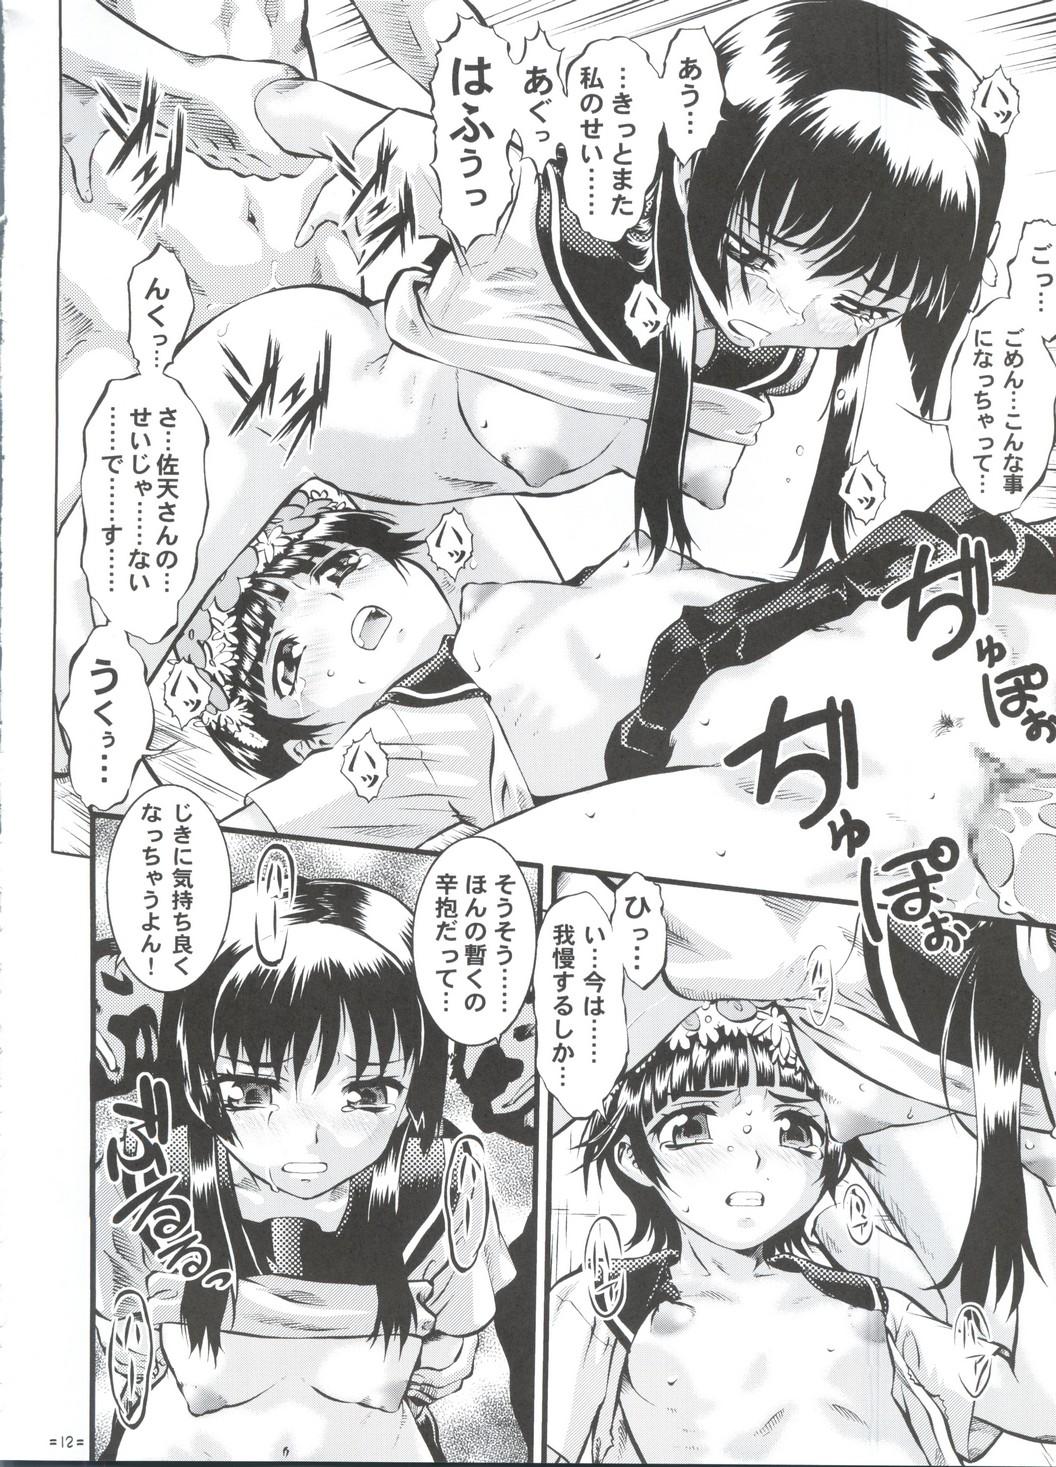 Com W Poron TO-R - Toaru kagaku no railgun Koihime musou Oral Sex Porn - Page 11